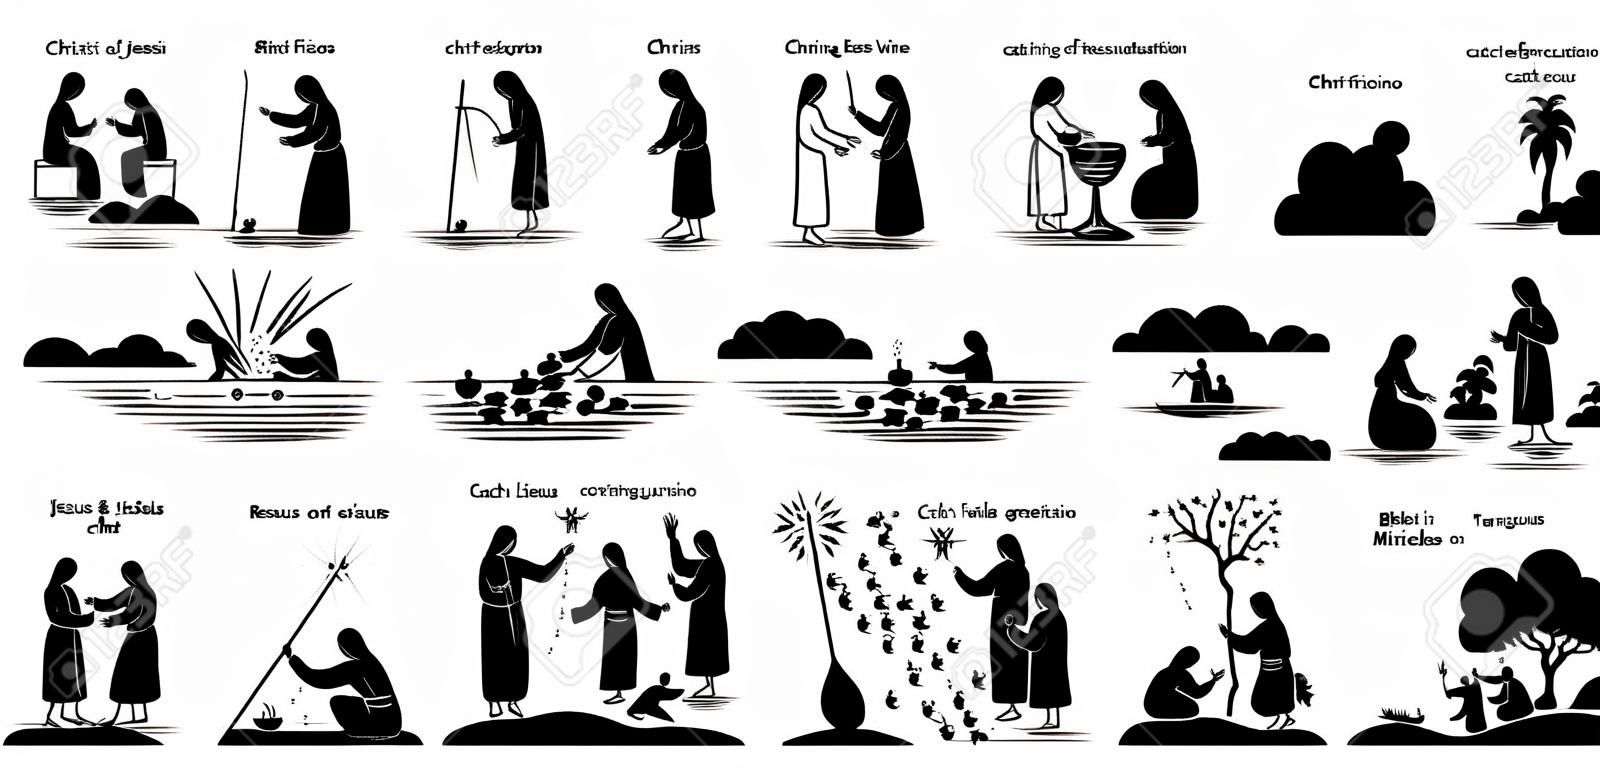 Wunder von Jesus Christus Icons Piktogramm. Strichmännchen von Jesus Christus, der Blinde heilt, Frau, Wasser in Wein verwandelt, Exorzismus, Auferstehung, Fische fangen, auf Wasser gehen, füttern und Verklärung.